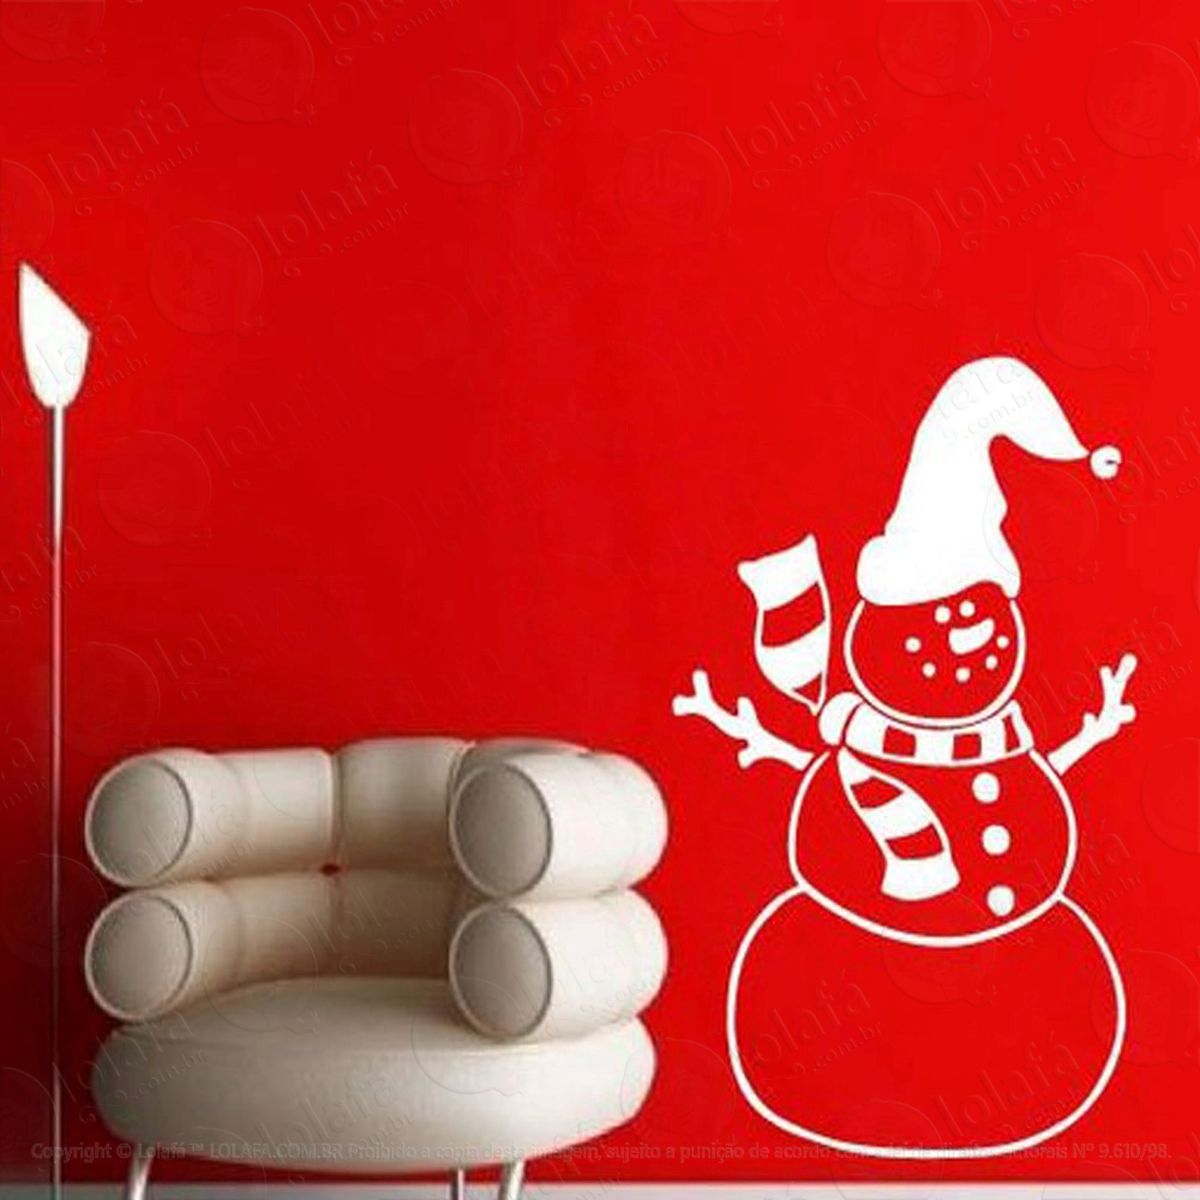 boneco de neve adesivo de natal para vitrine, parede, porta de vidro - decoração natalina mod:51